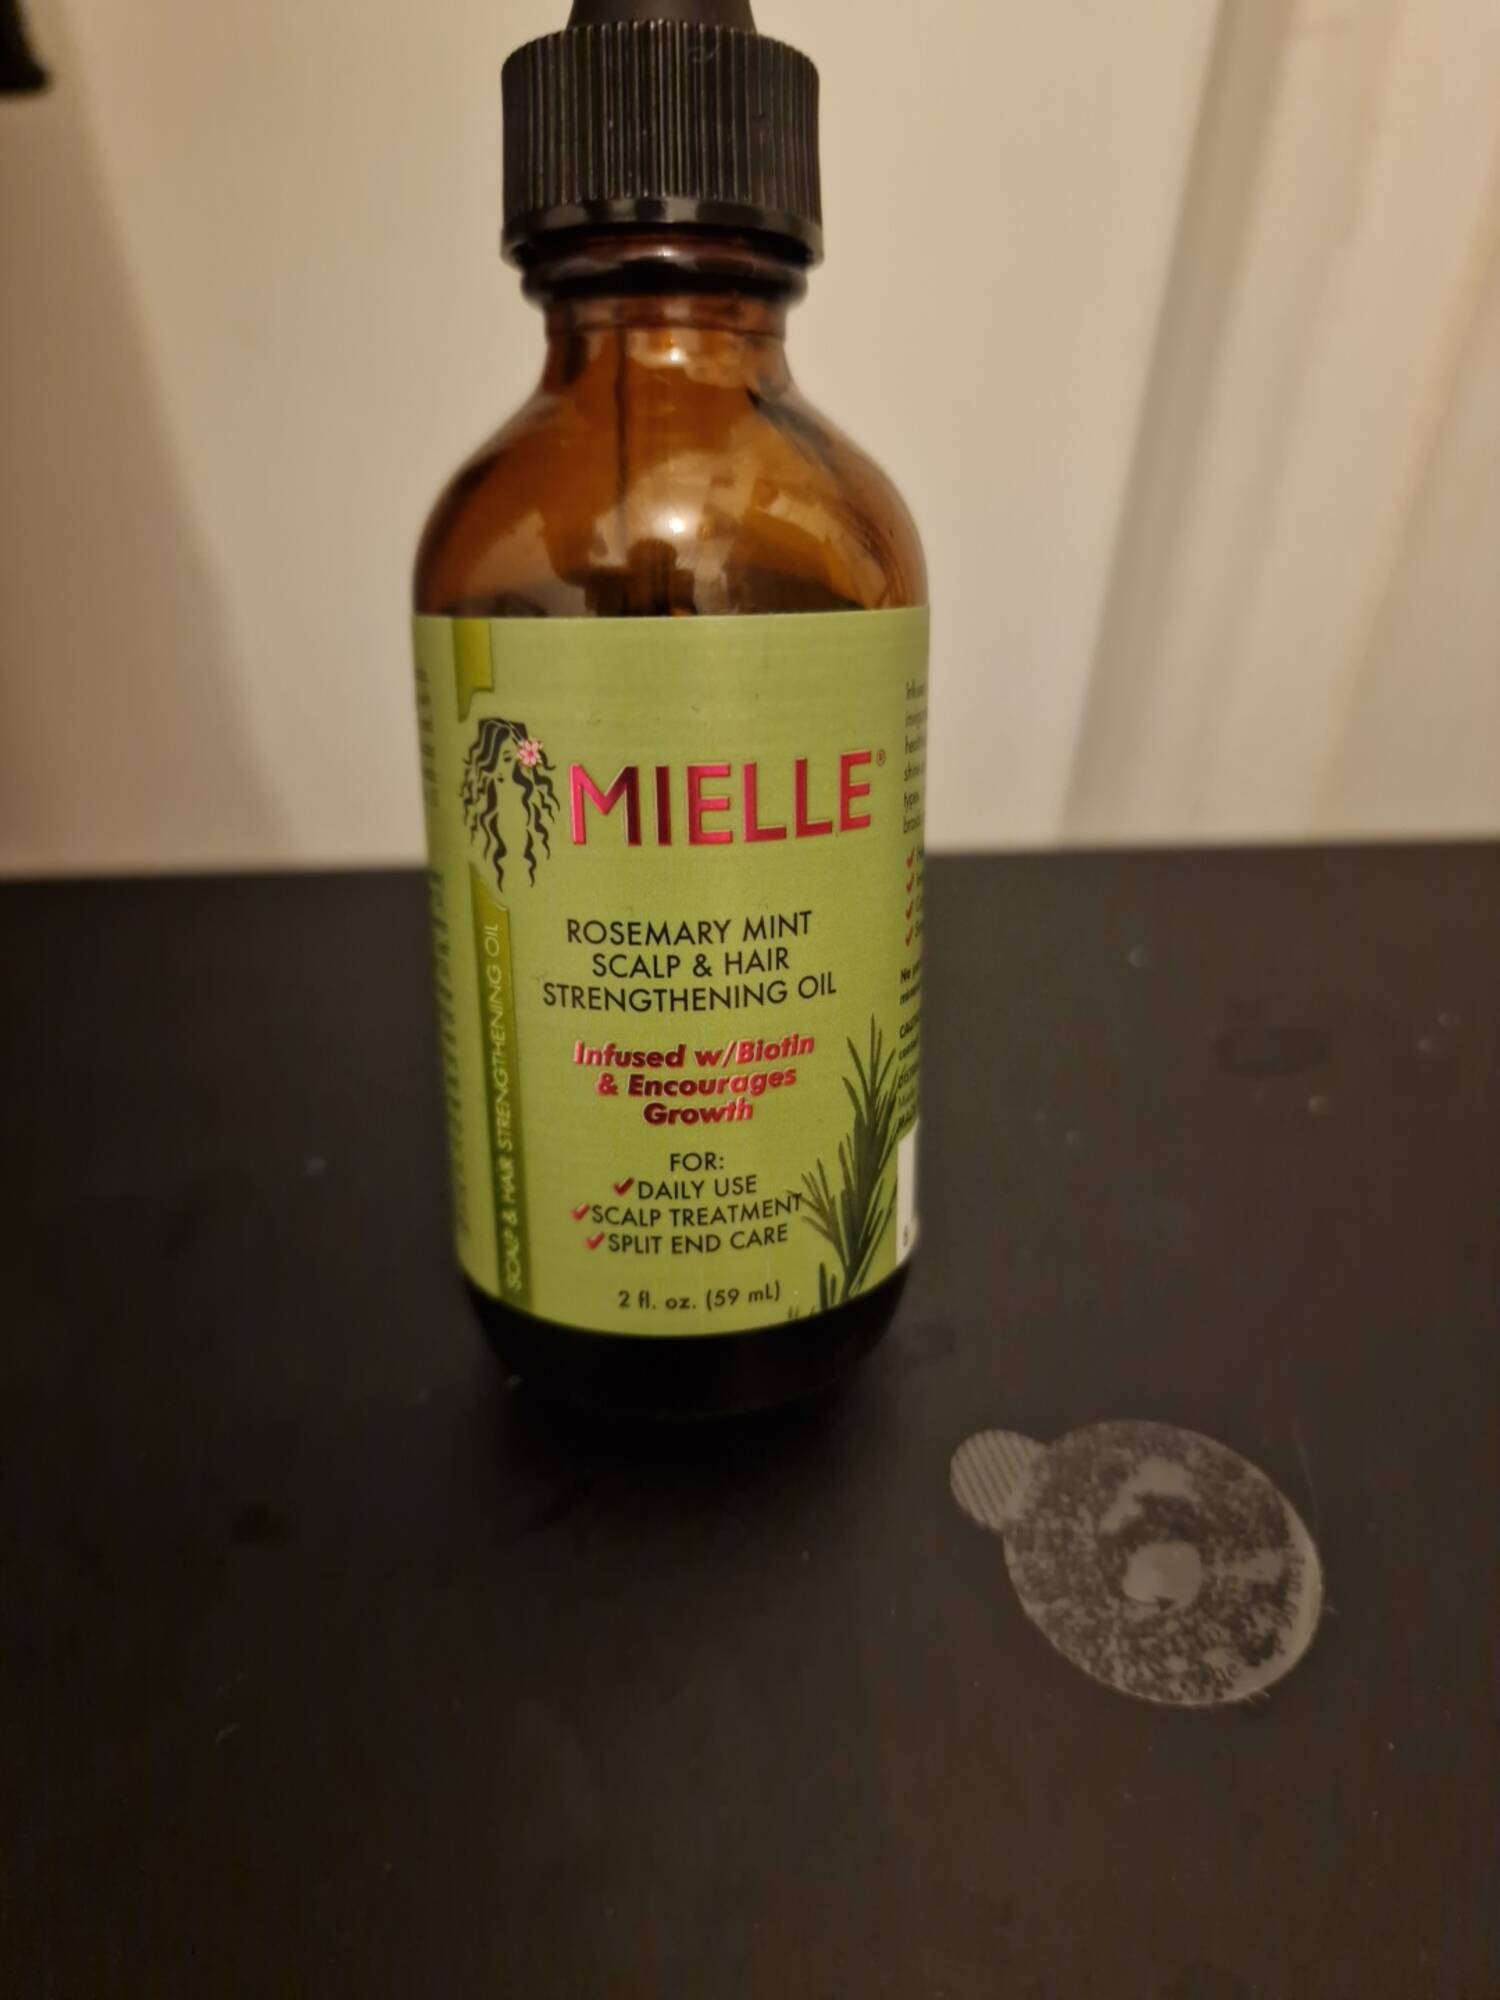 MIELLE - Rosemary mint scalp & hair strengthening oil